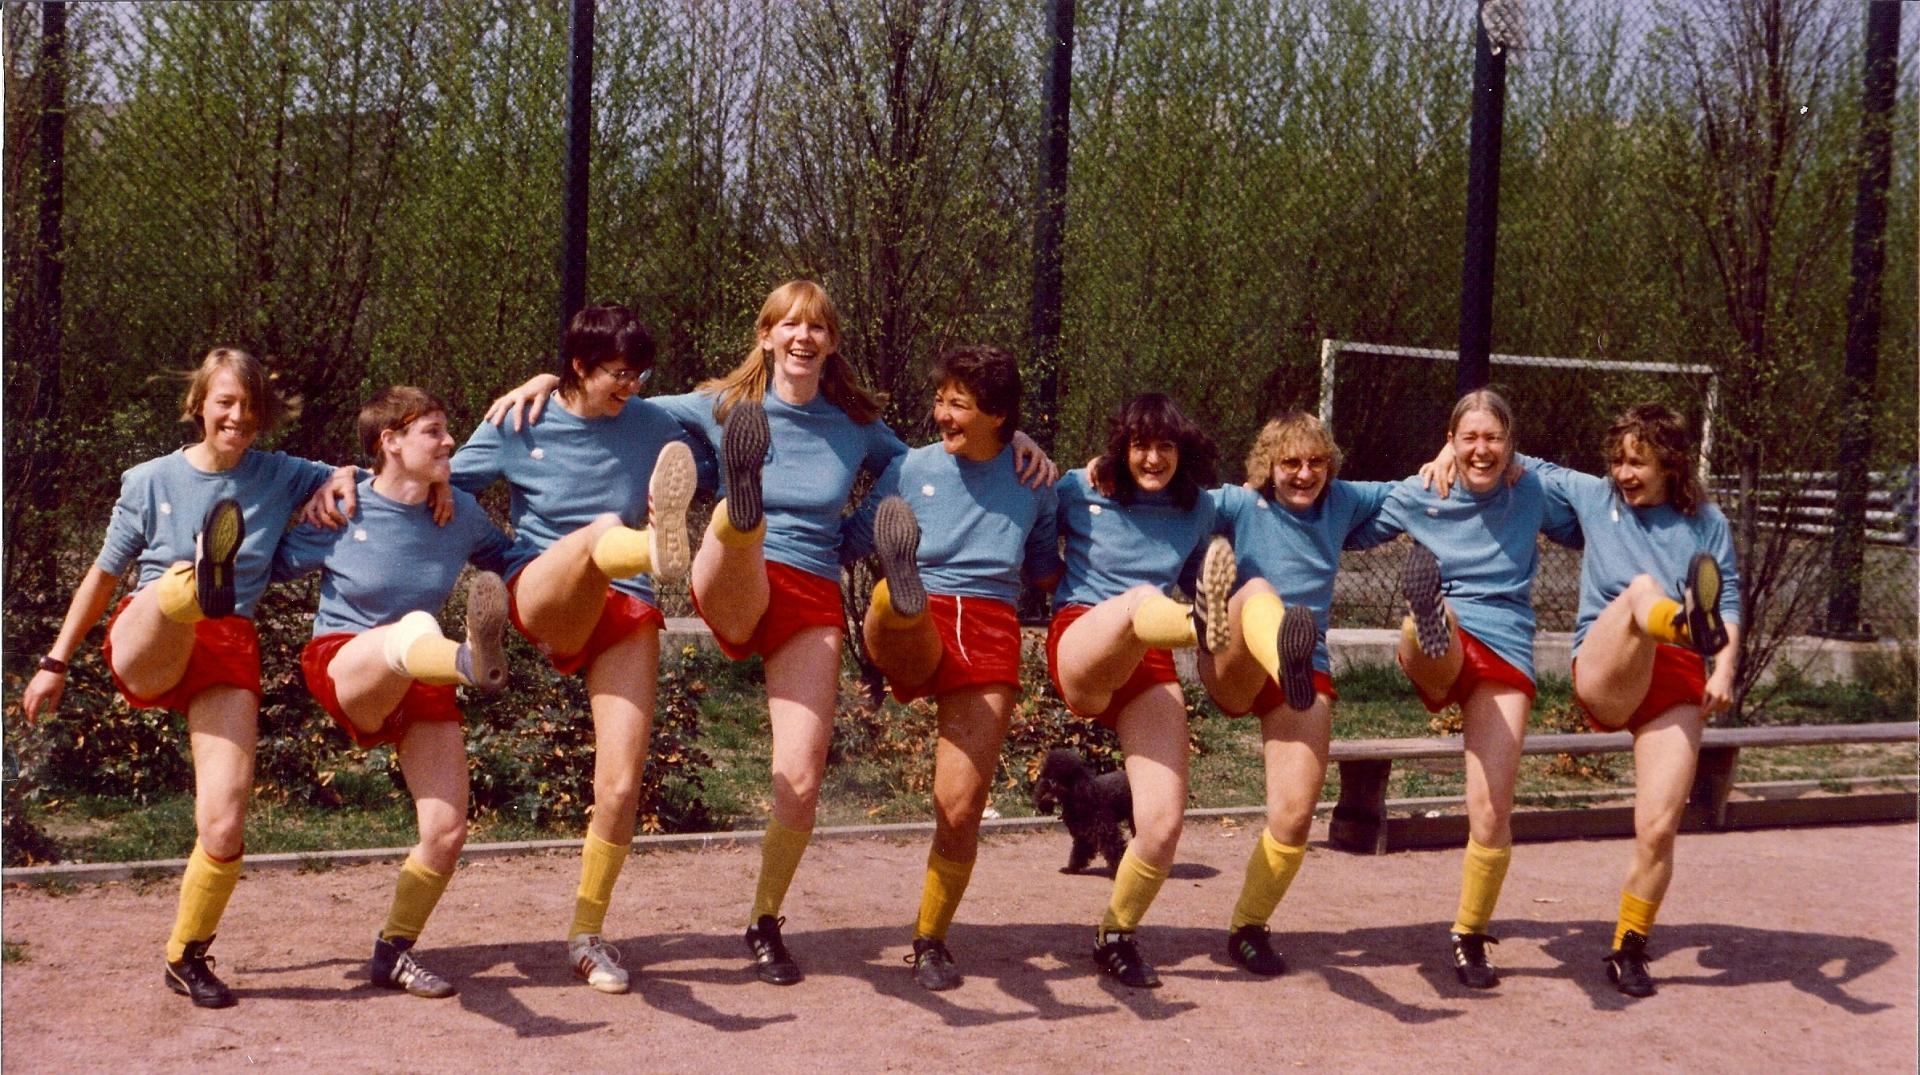 Neun junge Frauen stehen Arm in Arm auf einem Sportplatz und schwingen gleichzeitig das rechte Bein hoch.